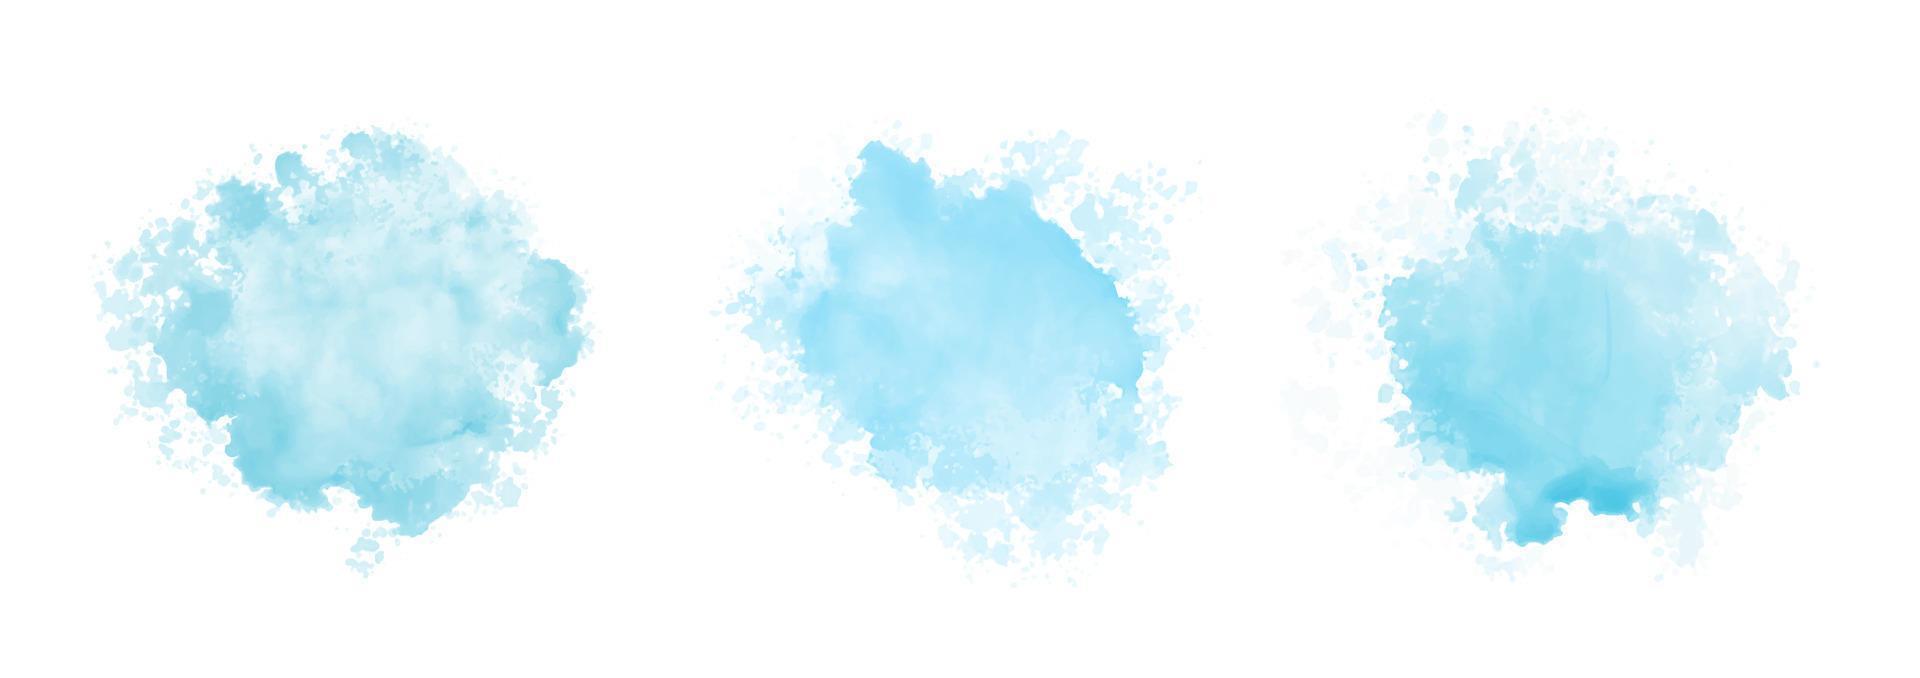 motif abstrait avec des nuages aquarelles bleus sur fond blanc. texture d'éclaboussure impétueuse de l'eau aquarelle cyan vecteur